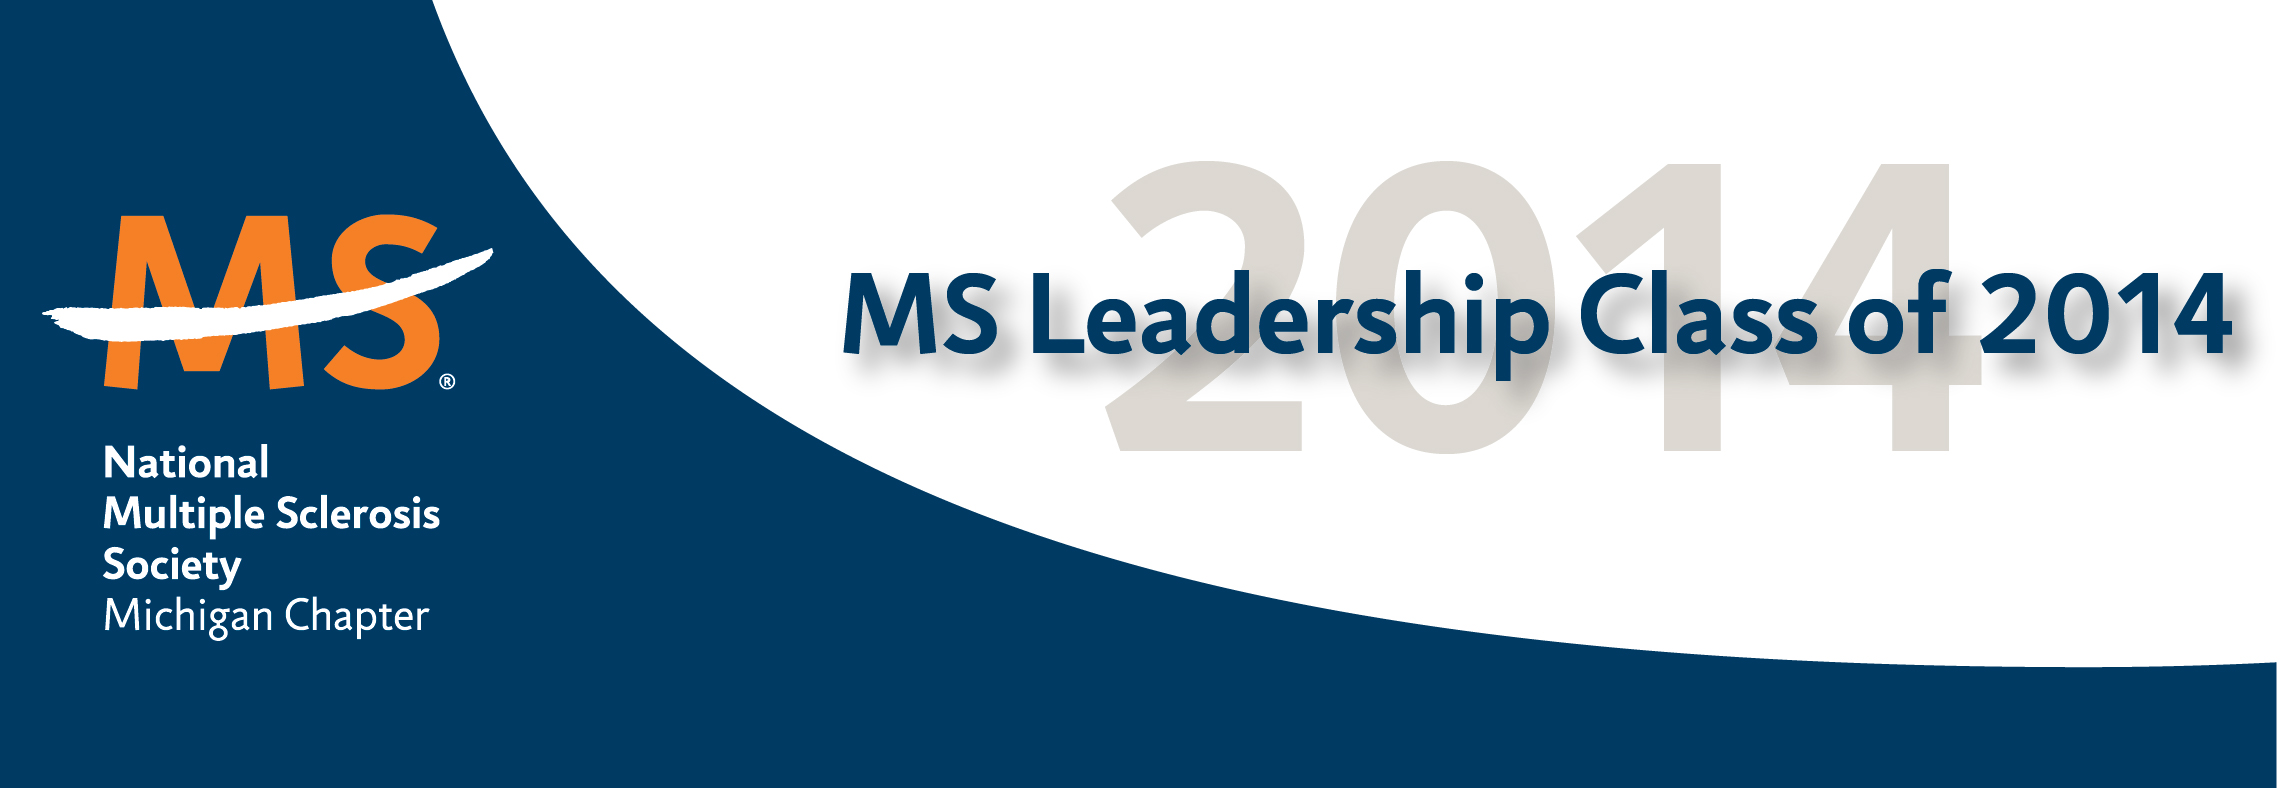 MIG_2014_Leadership